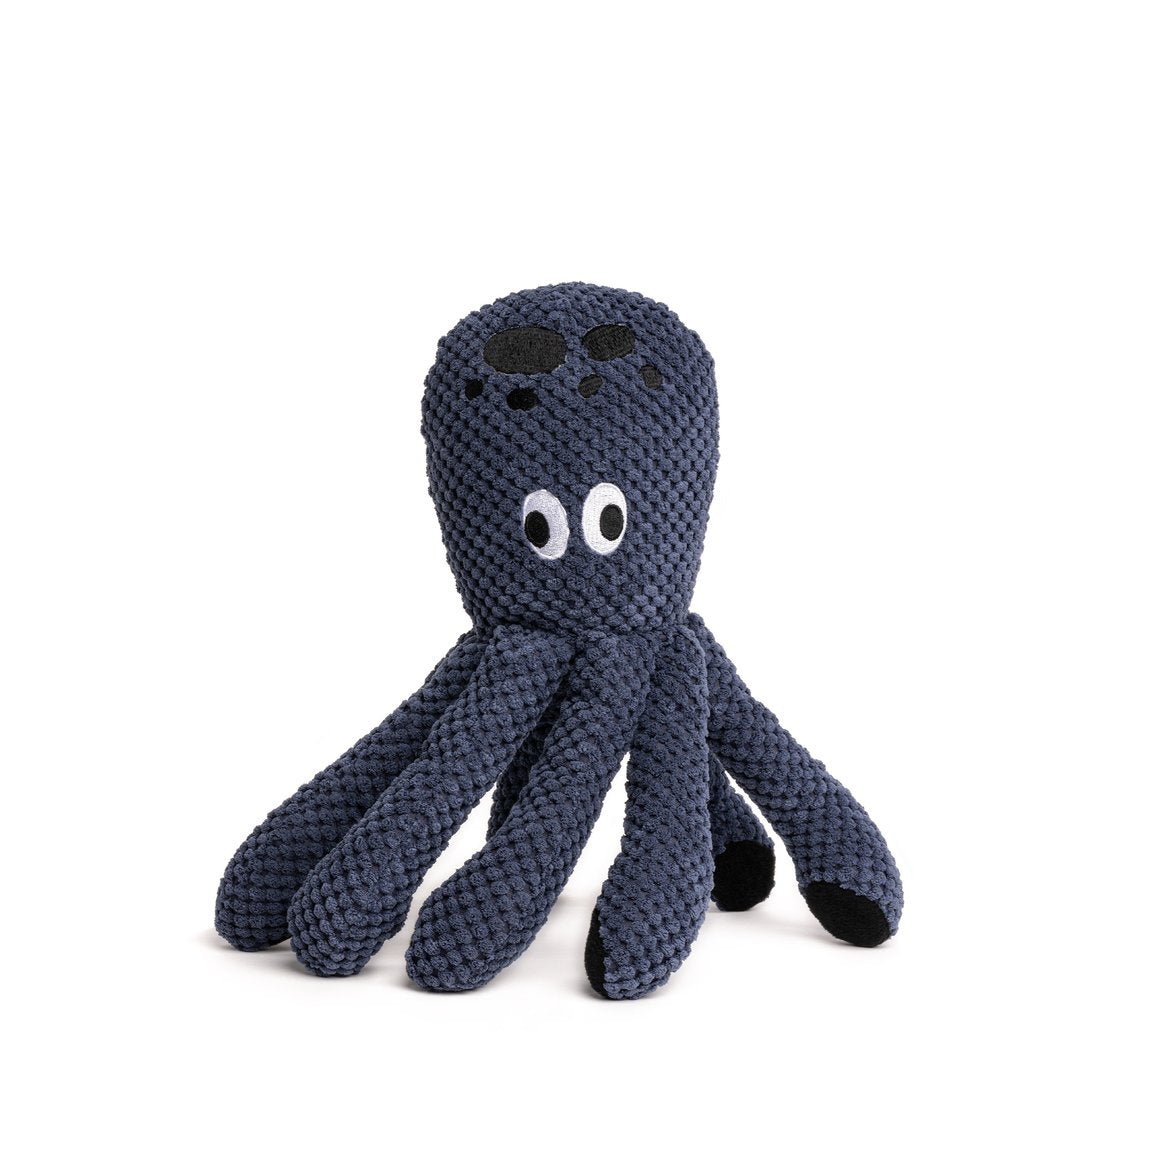 Floppy Animal Toysi Octopus Image